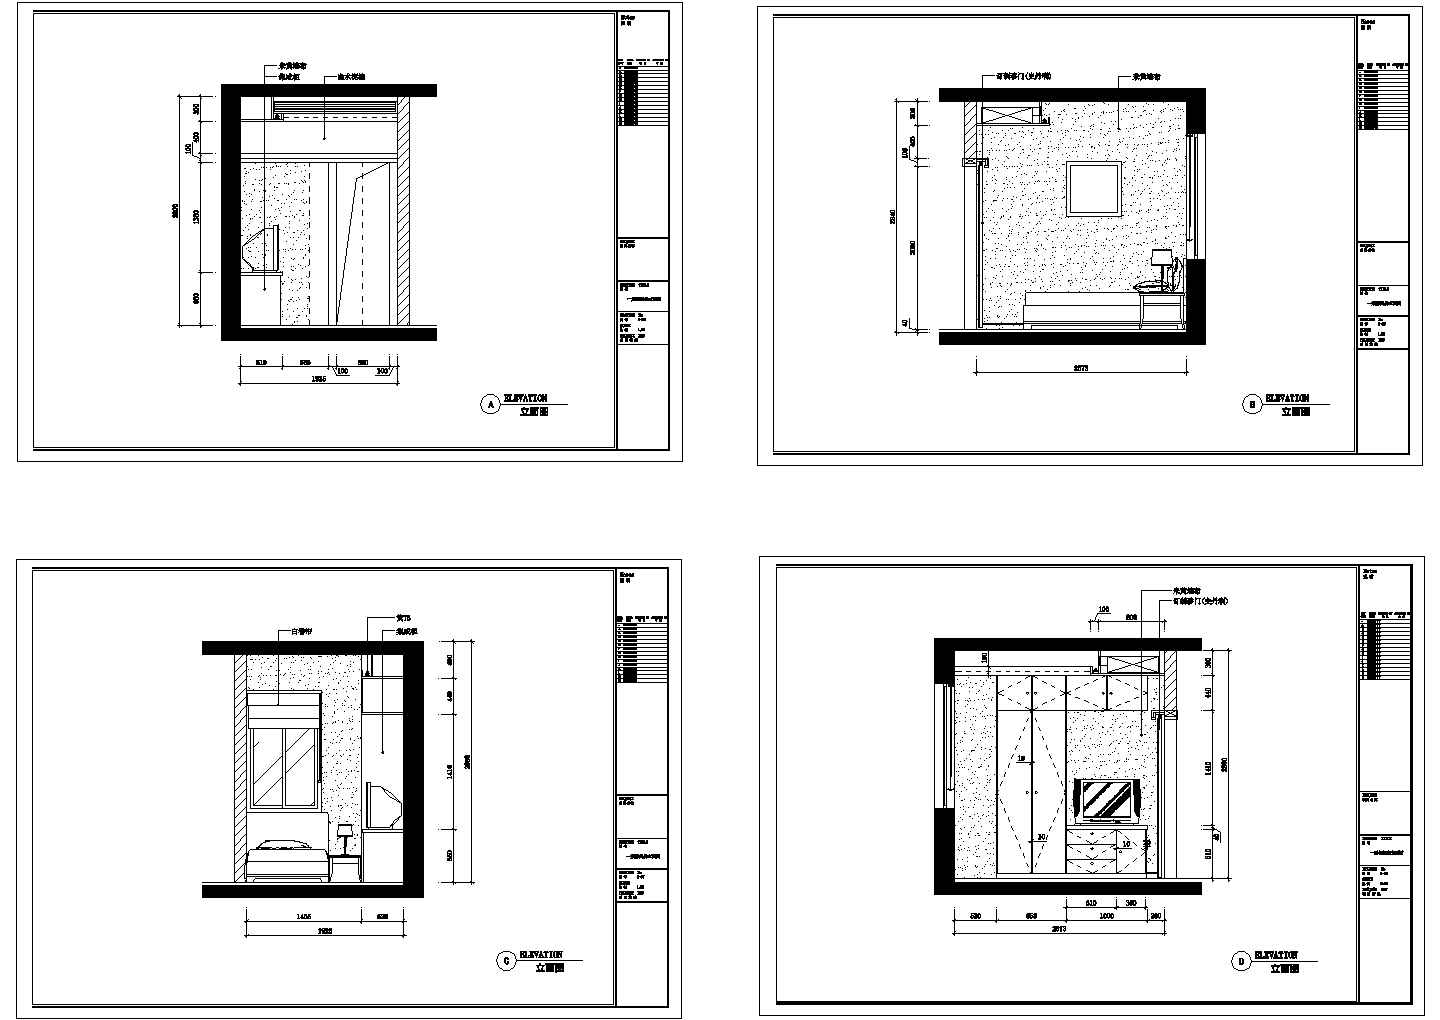 2层： 豪华中式装修住宅楼室内设计图【内效果4张】